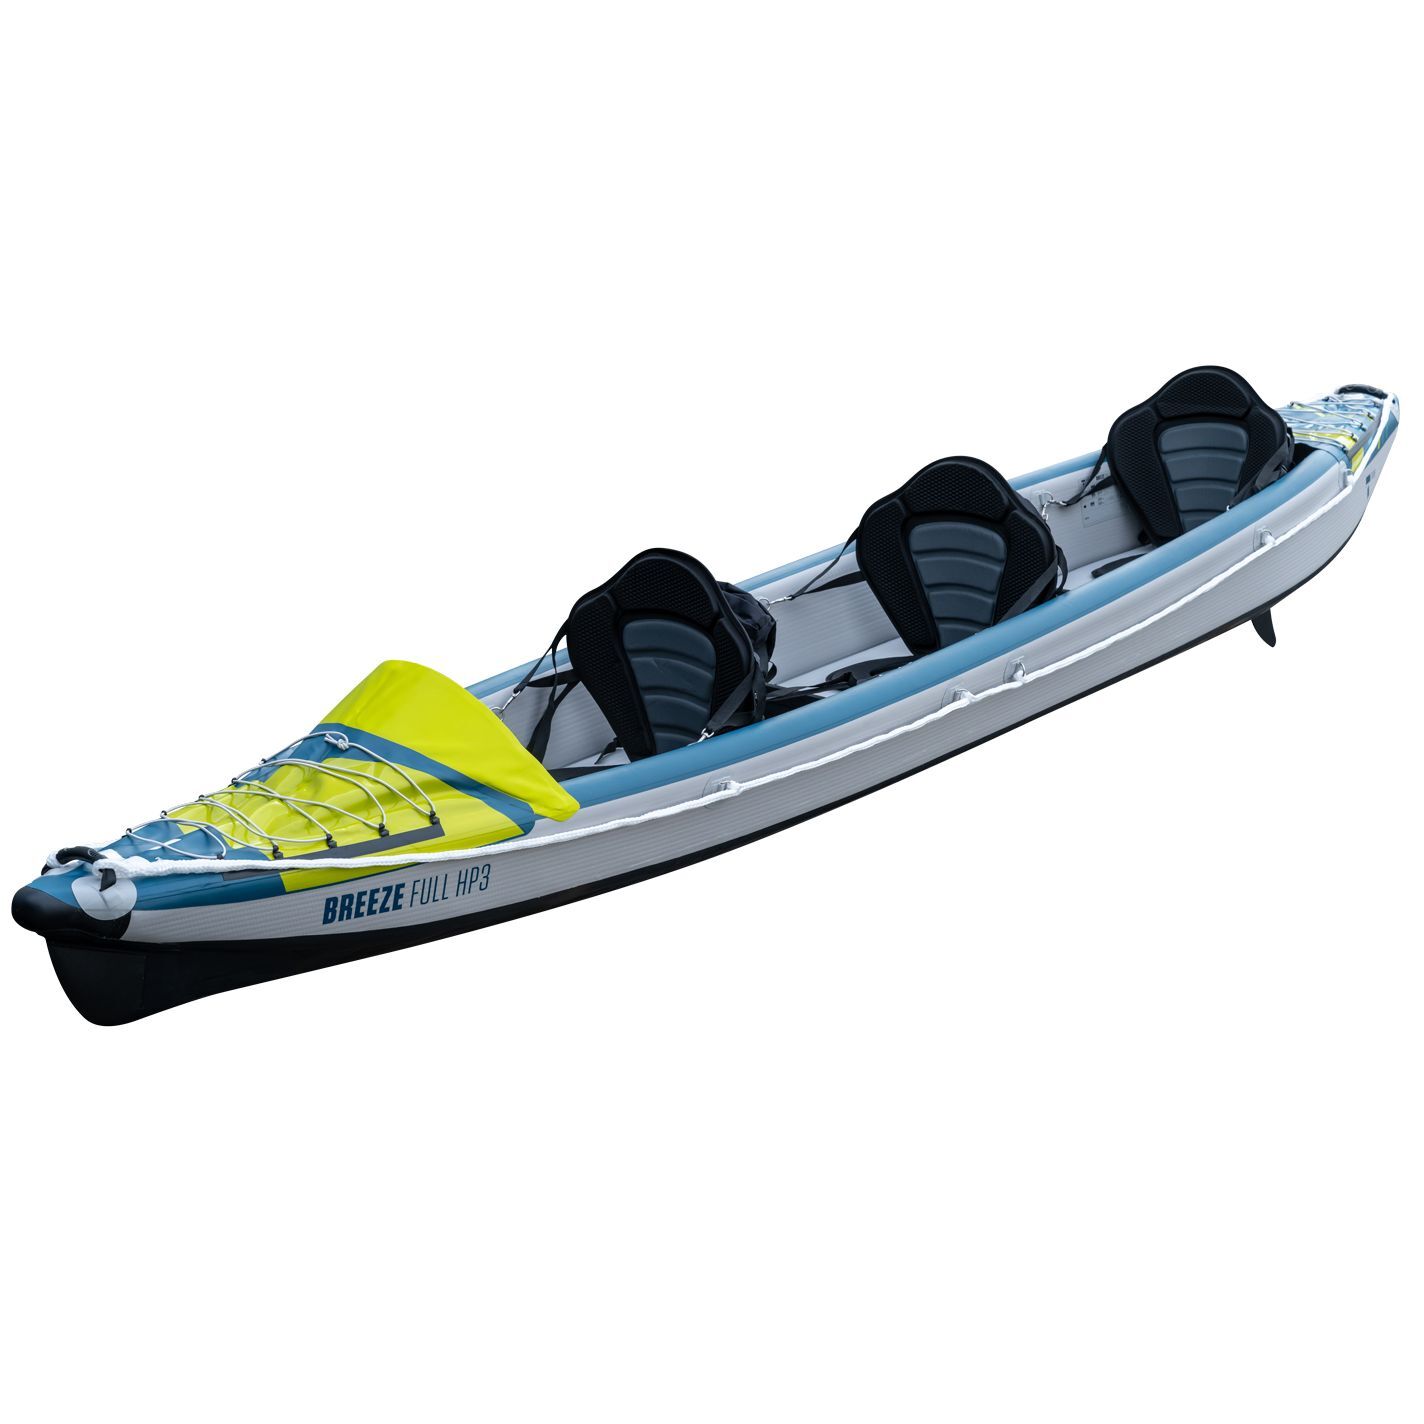 Tahe Outdoor Kayak Air Breeze Full Hp3 - Opblaasbare kajak